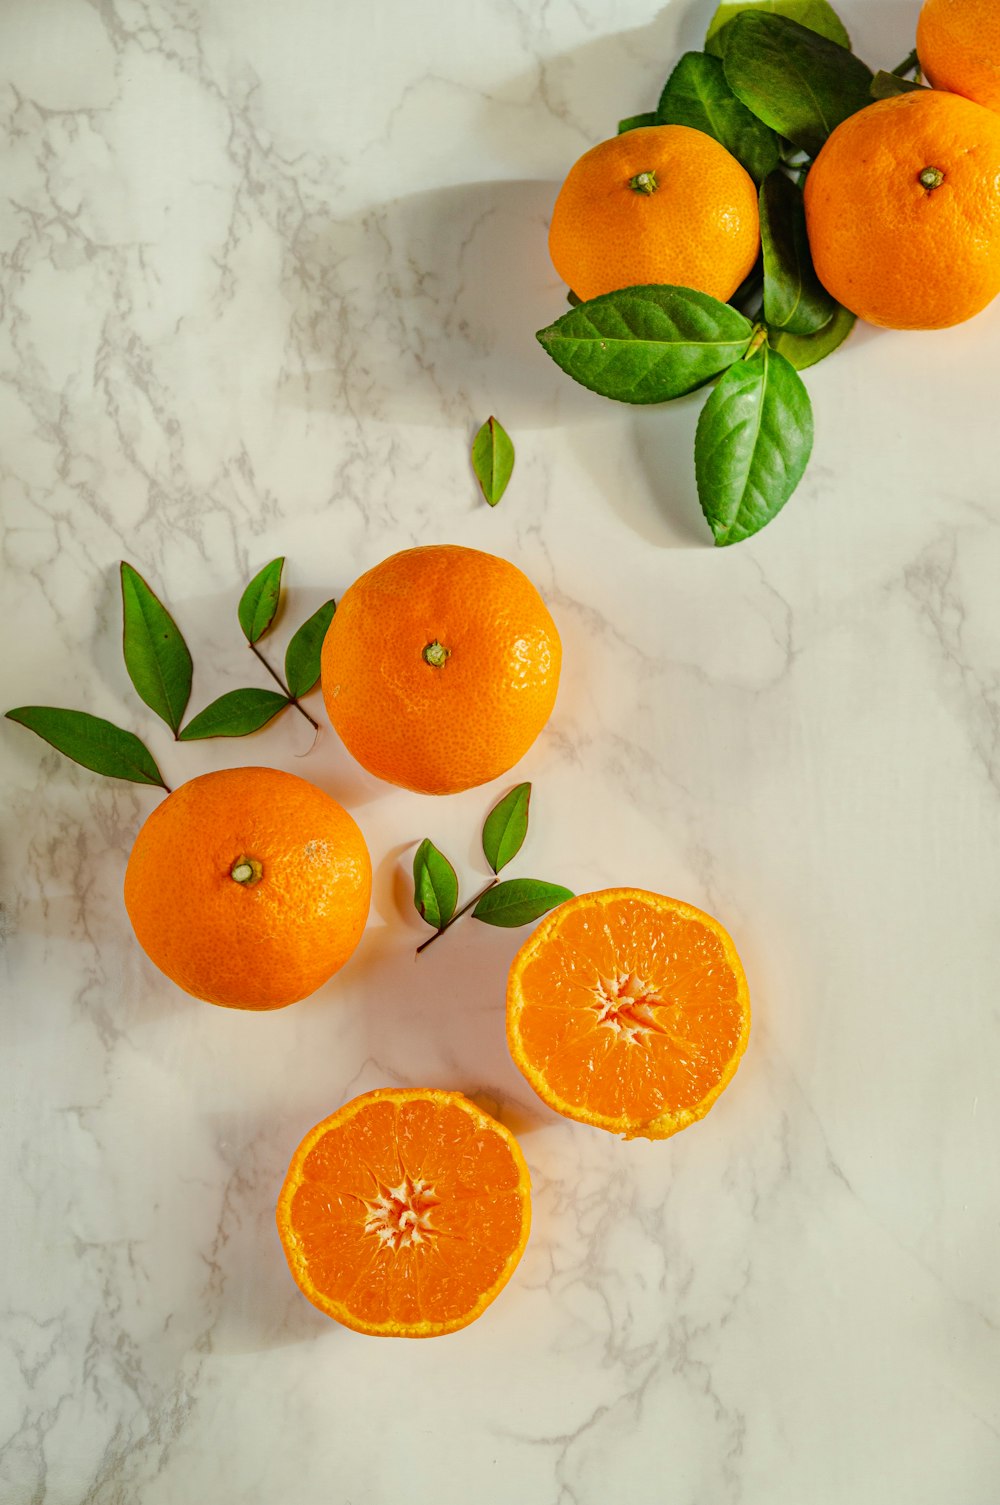 흰색 표면에 얇게 썬 오렌지 과일